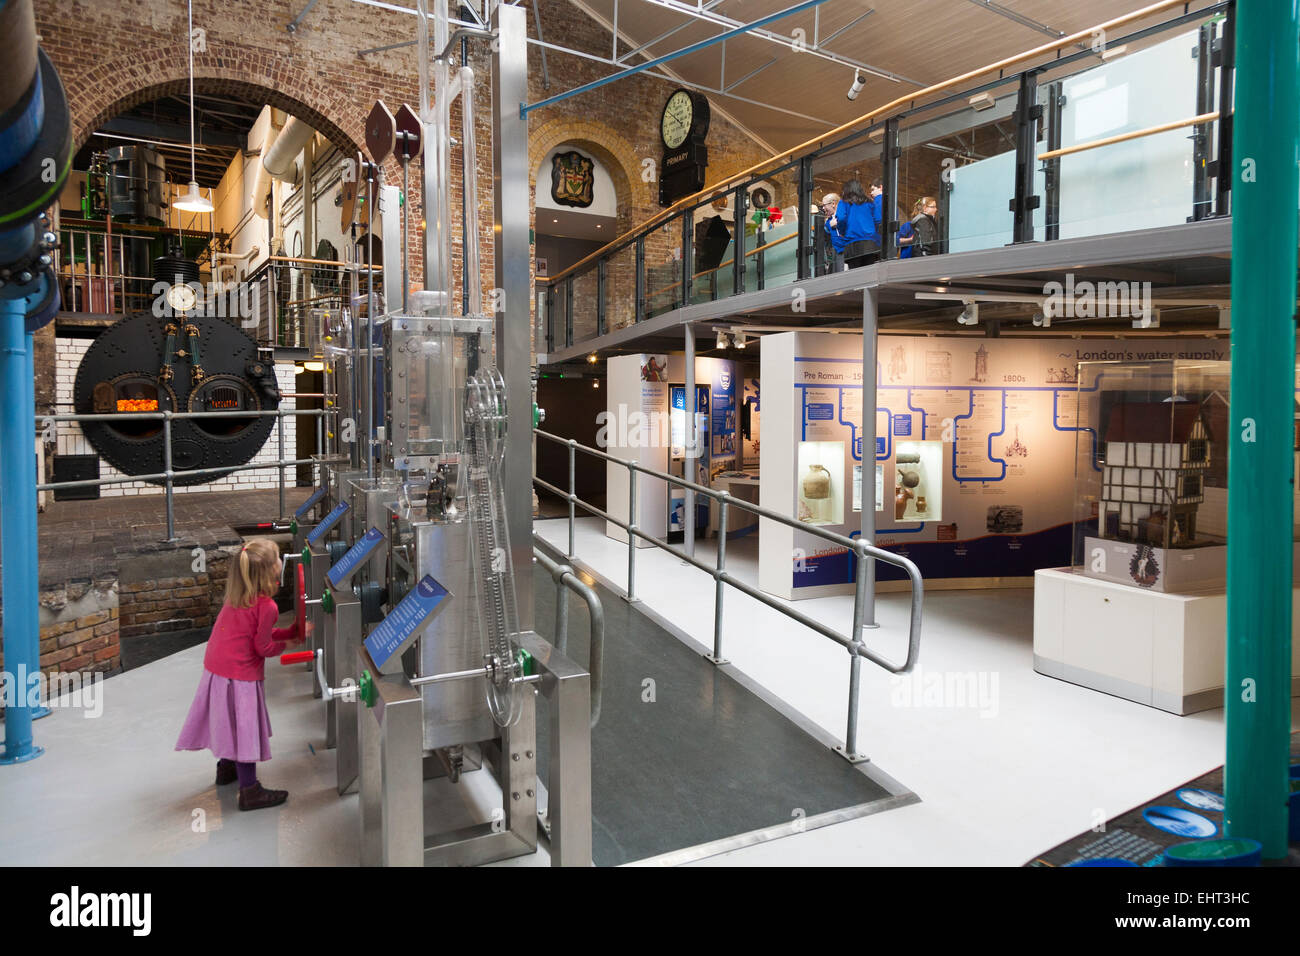 Besucher / Touristen kleines Kind in den Wasserwerken / Wasserwerk Galerie; Das Londoner Museum des Wassers & Dampf. Brentford in der Nähe von Kew Stockfoto